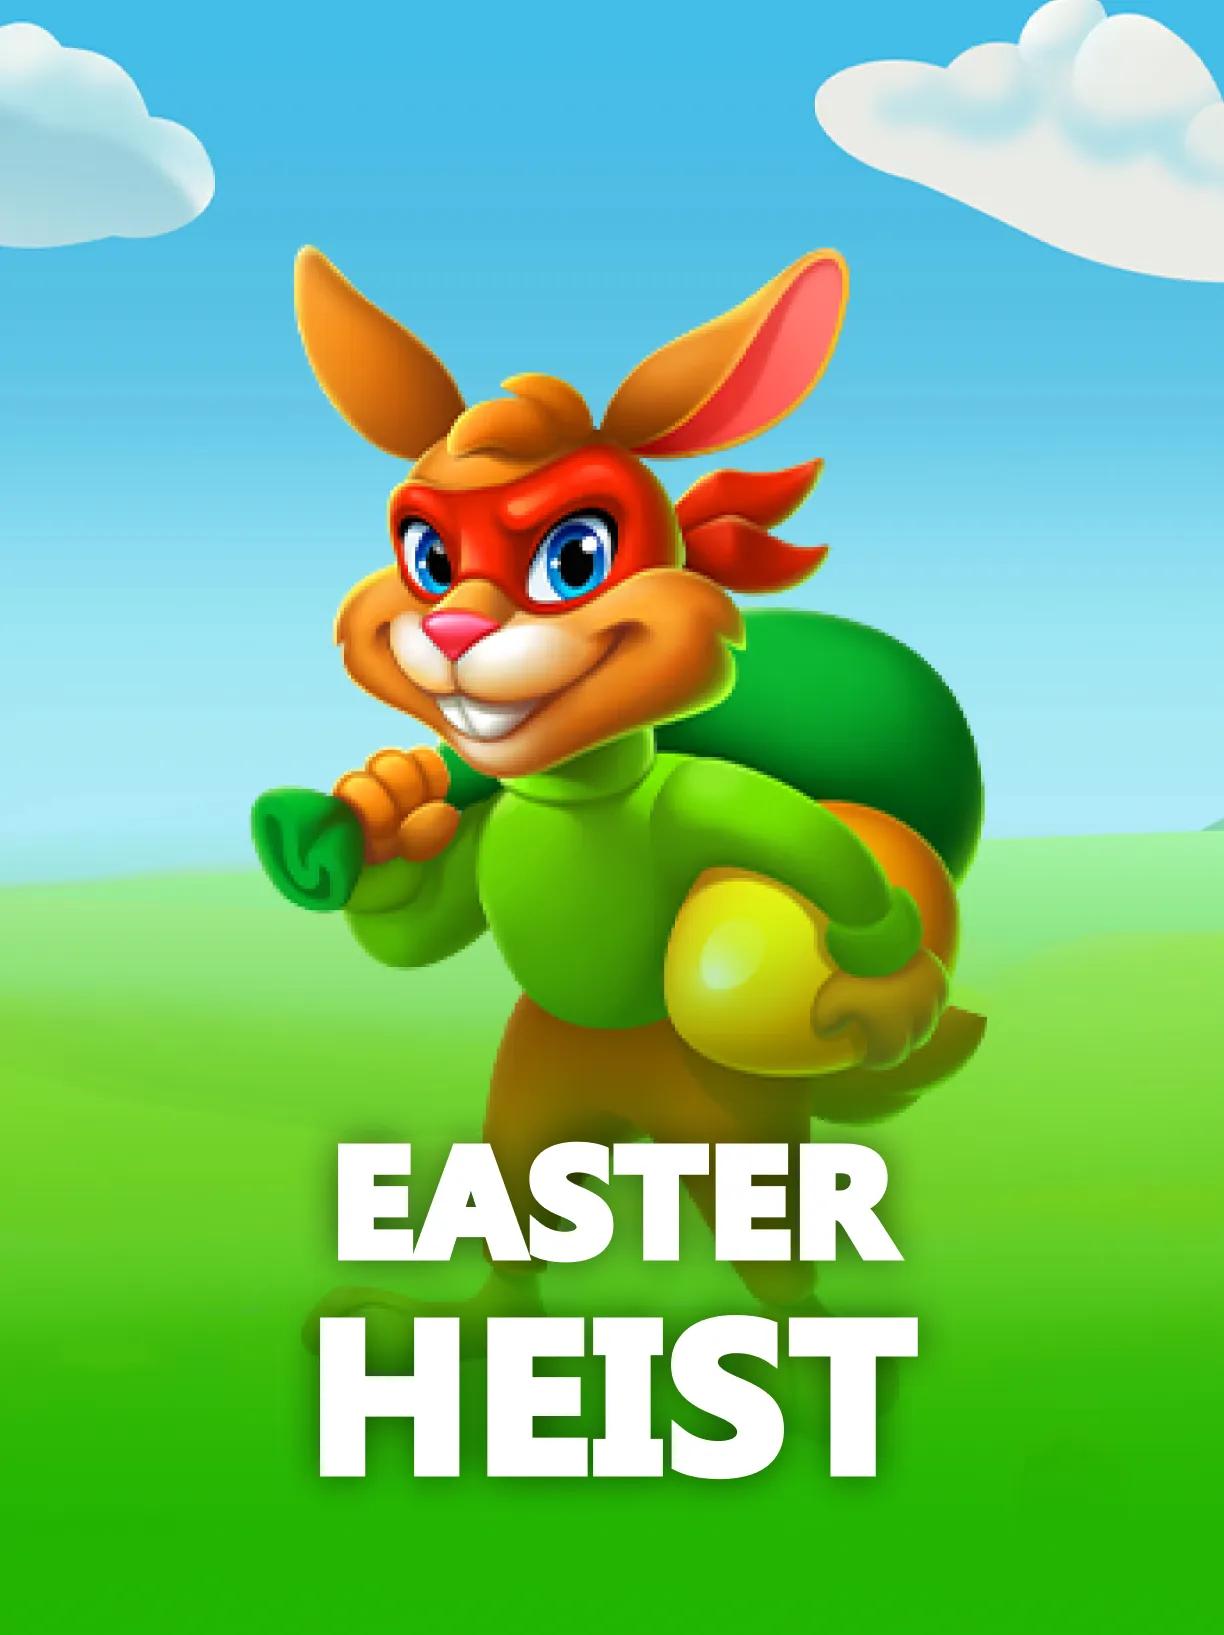 Easter_Heist_square.webp